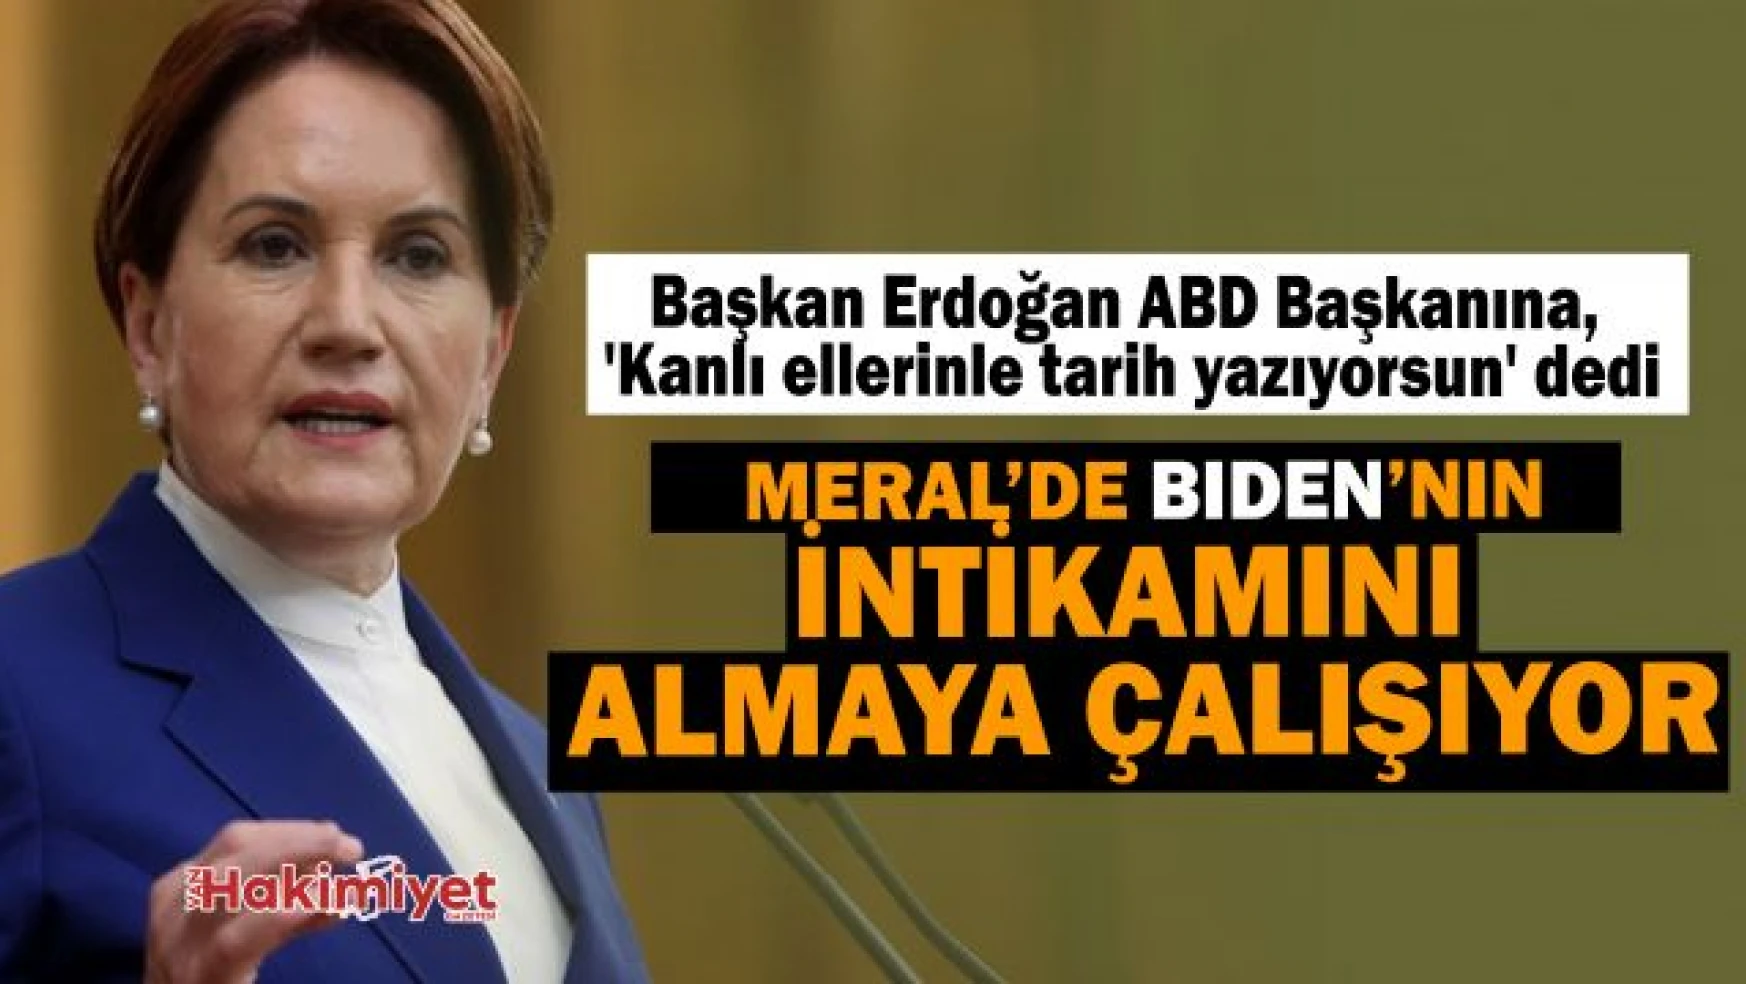 Meral Akşener'in Netahyahu'yu Erdoğan'a benzetmesine tepki yağıyor